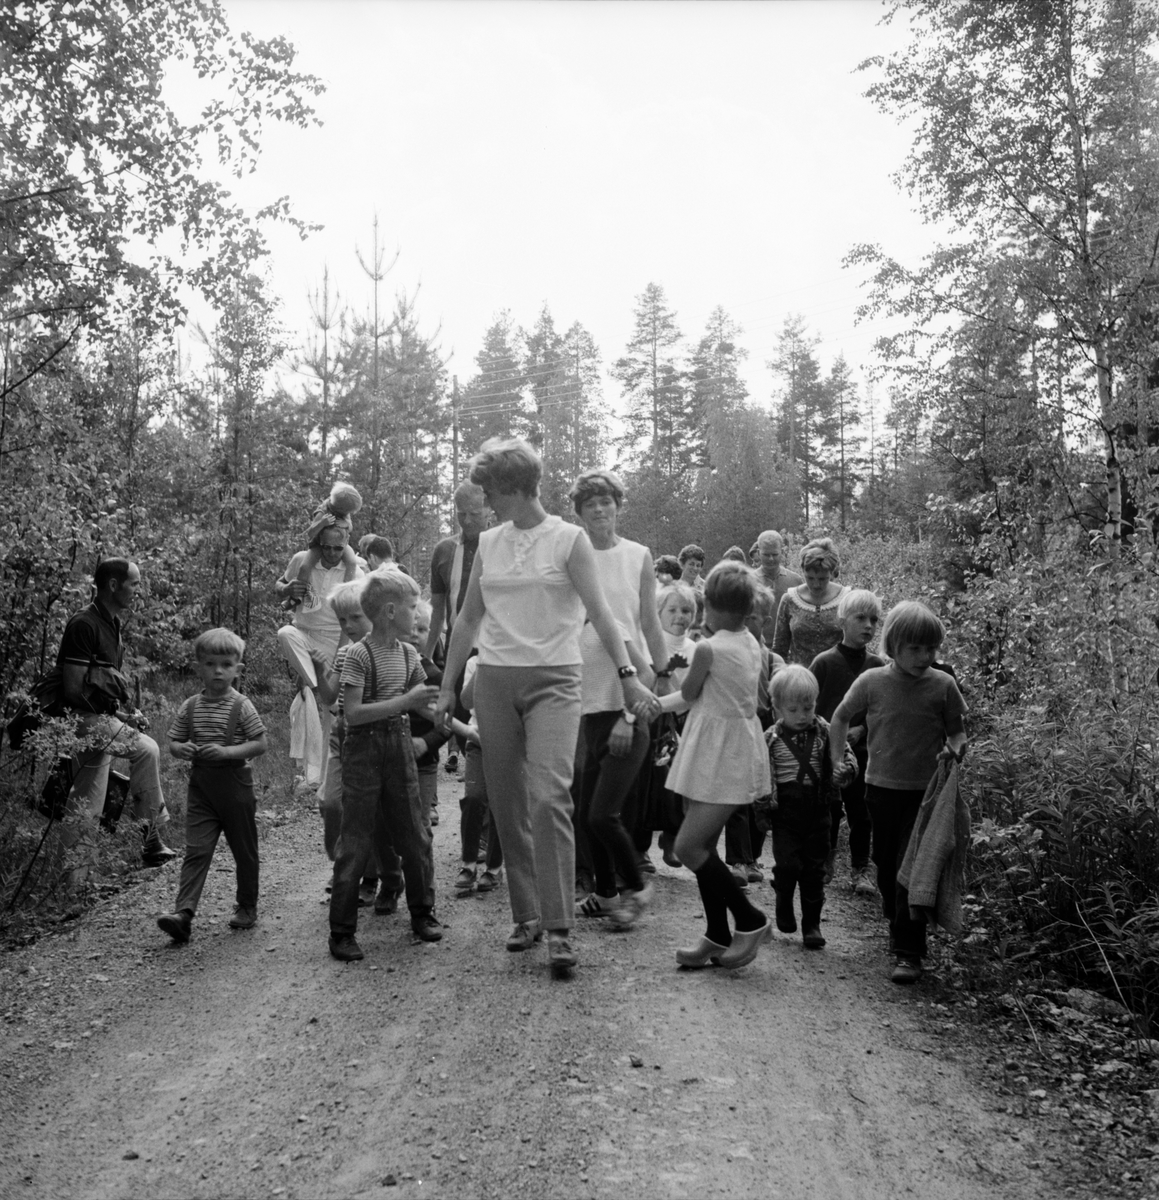 Arbrå,
Skogsmulleavslutning,
Juni 1969